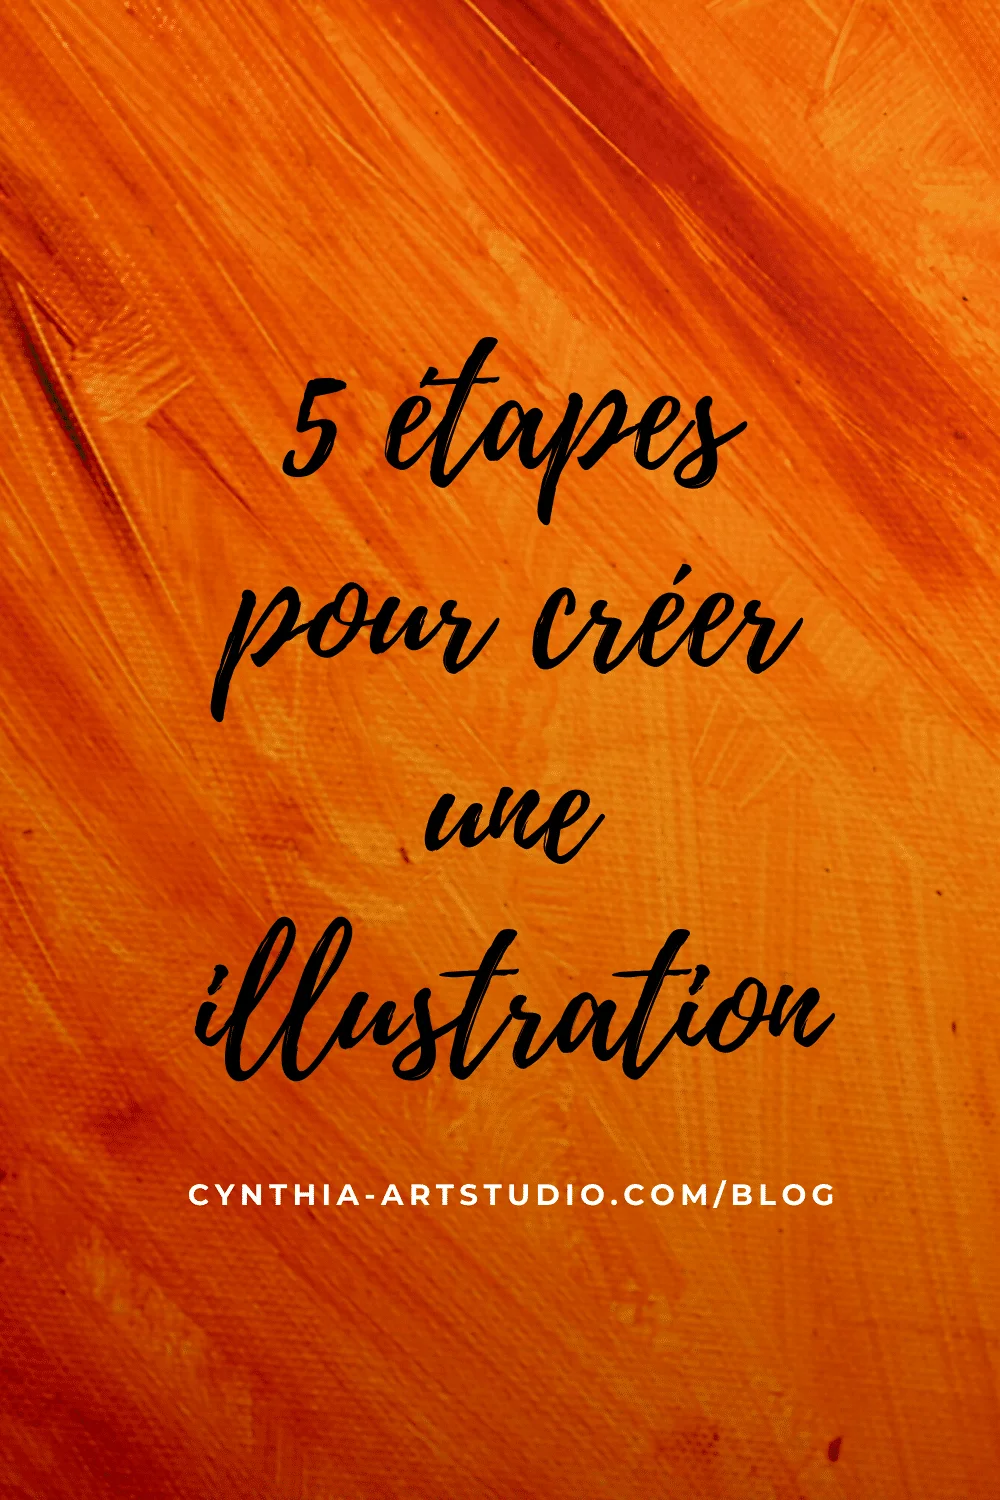 Cinq étapes pour créer une illustration article écrit par Cynthia Artstudio